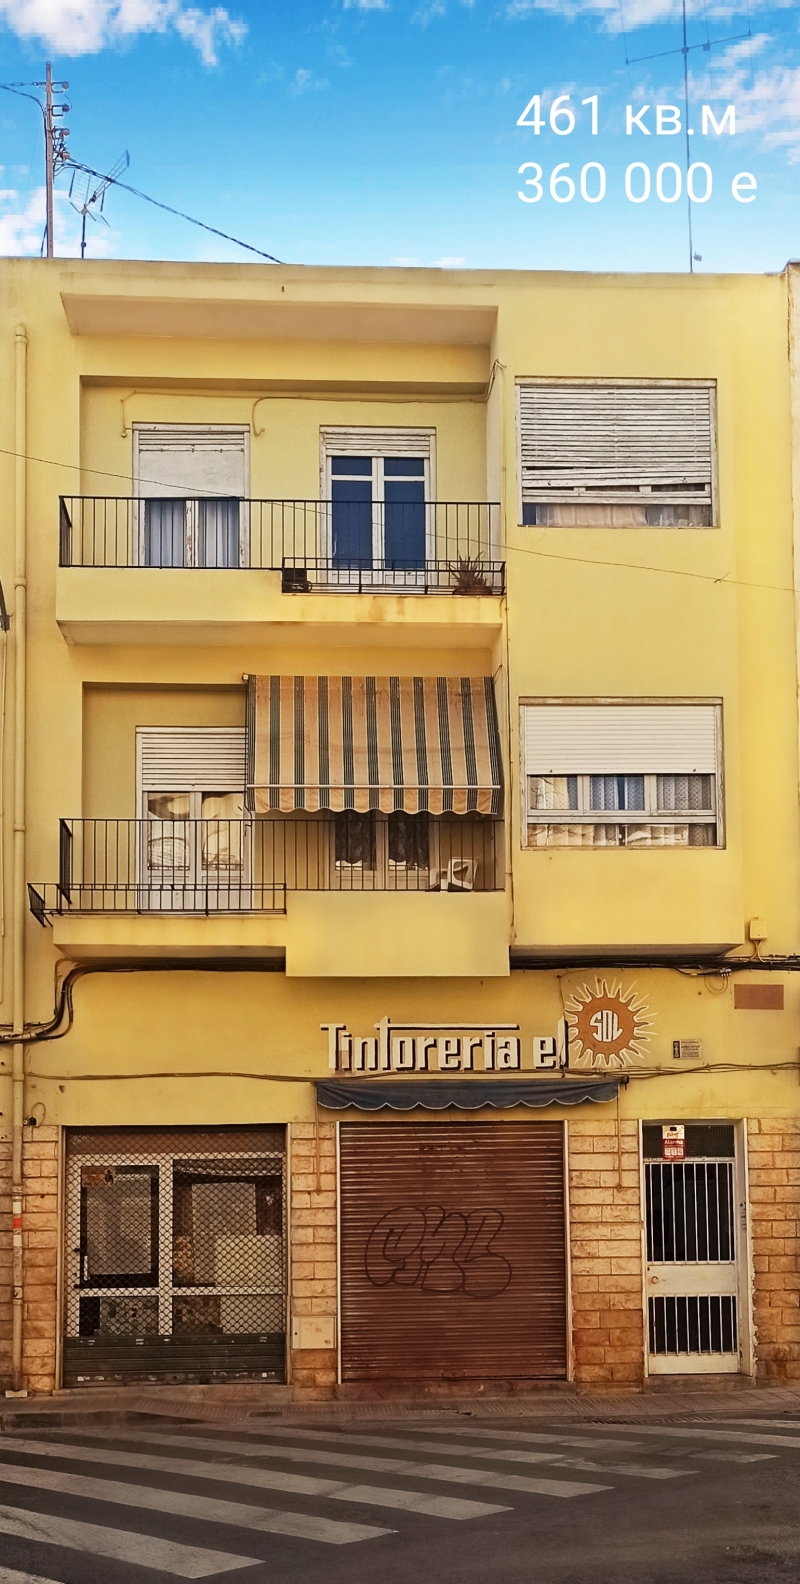 Продаётся 3-х этажное здание целиком в г. Аликанте (Испания)